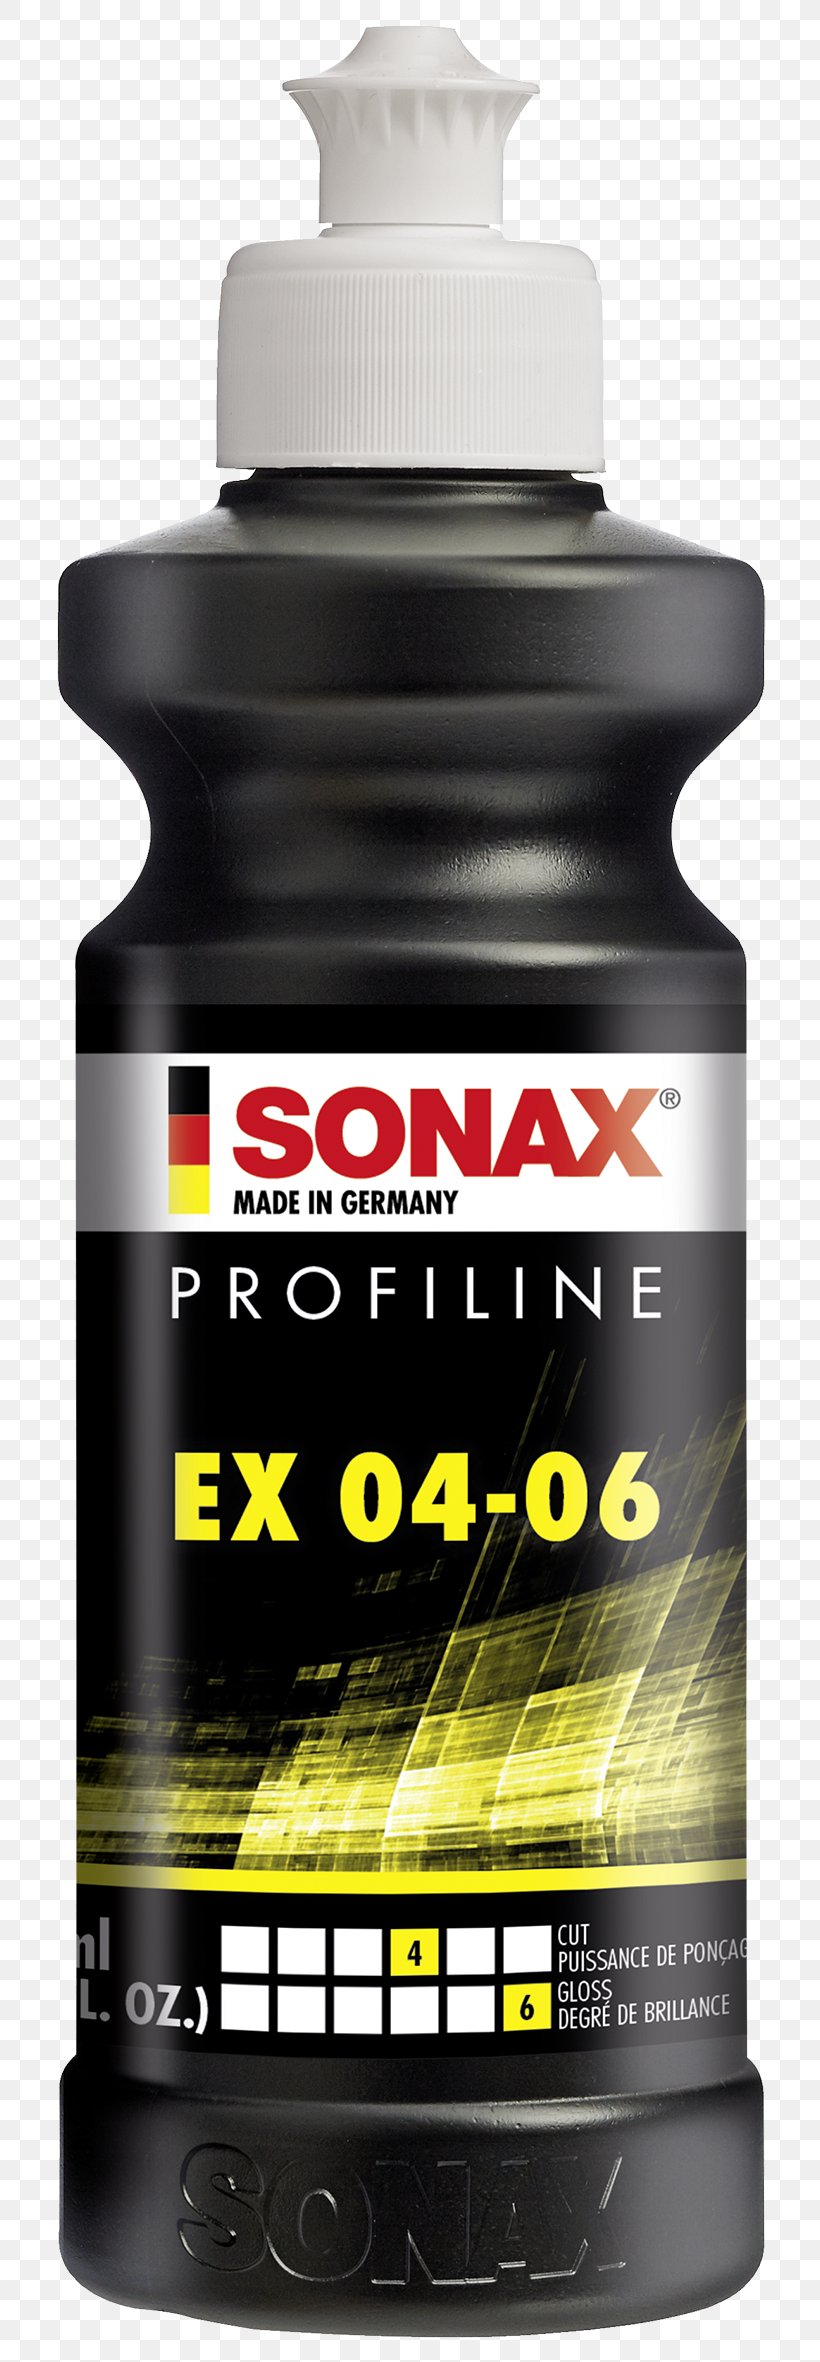 Sonax Polish Sonax ProfiLine Nano Polish Nano 02083000 Sonax 02425000 Profiline Ex 0406 169.1 Fl. Oz. Sonax Sonax Profiline NP 03-06 Sonax 242141 Profiline EX 04-06 SONAX Profiline Leather Cleaner Foam, PNG, 788x2362px, Car, Liquid, Polishing, Silicone Download Free